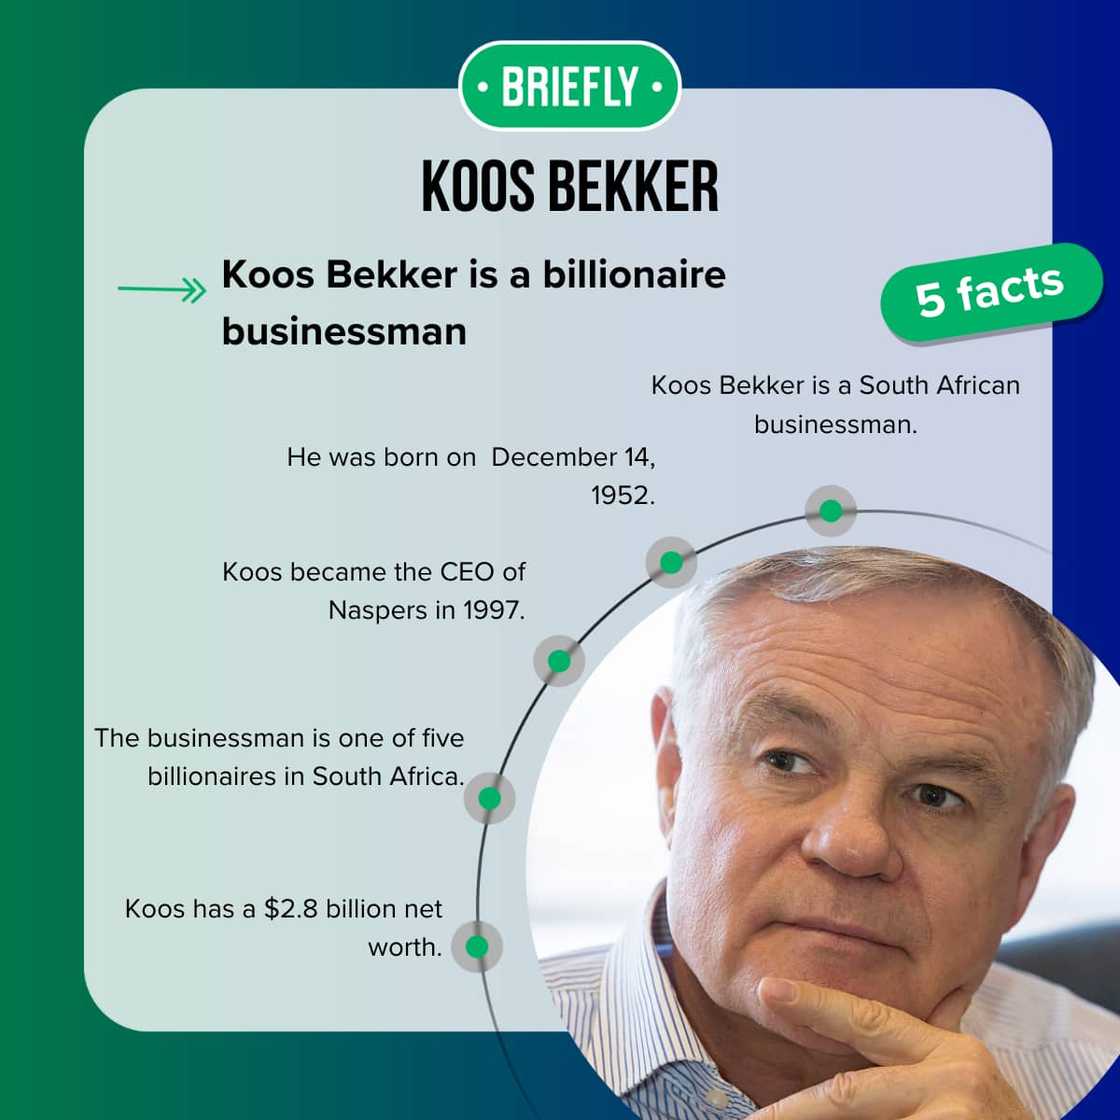 Koos Bekker's net worth